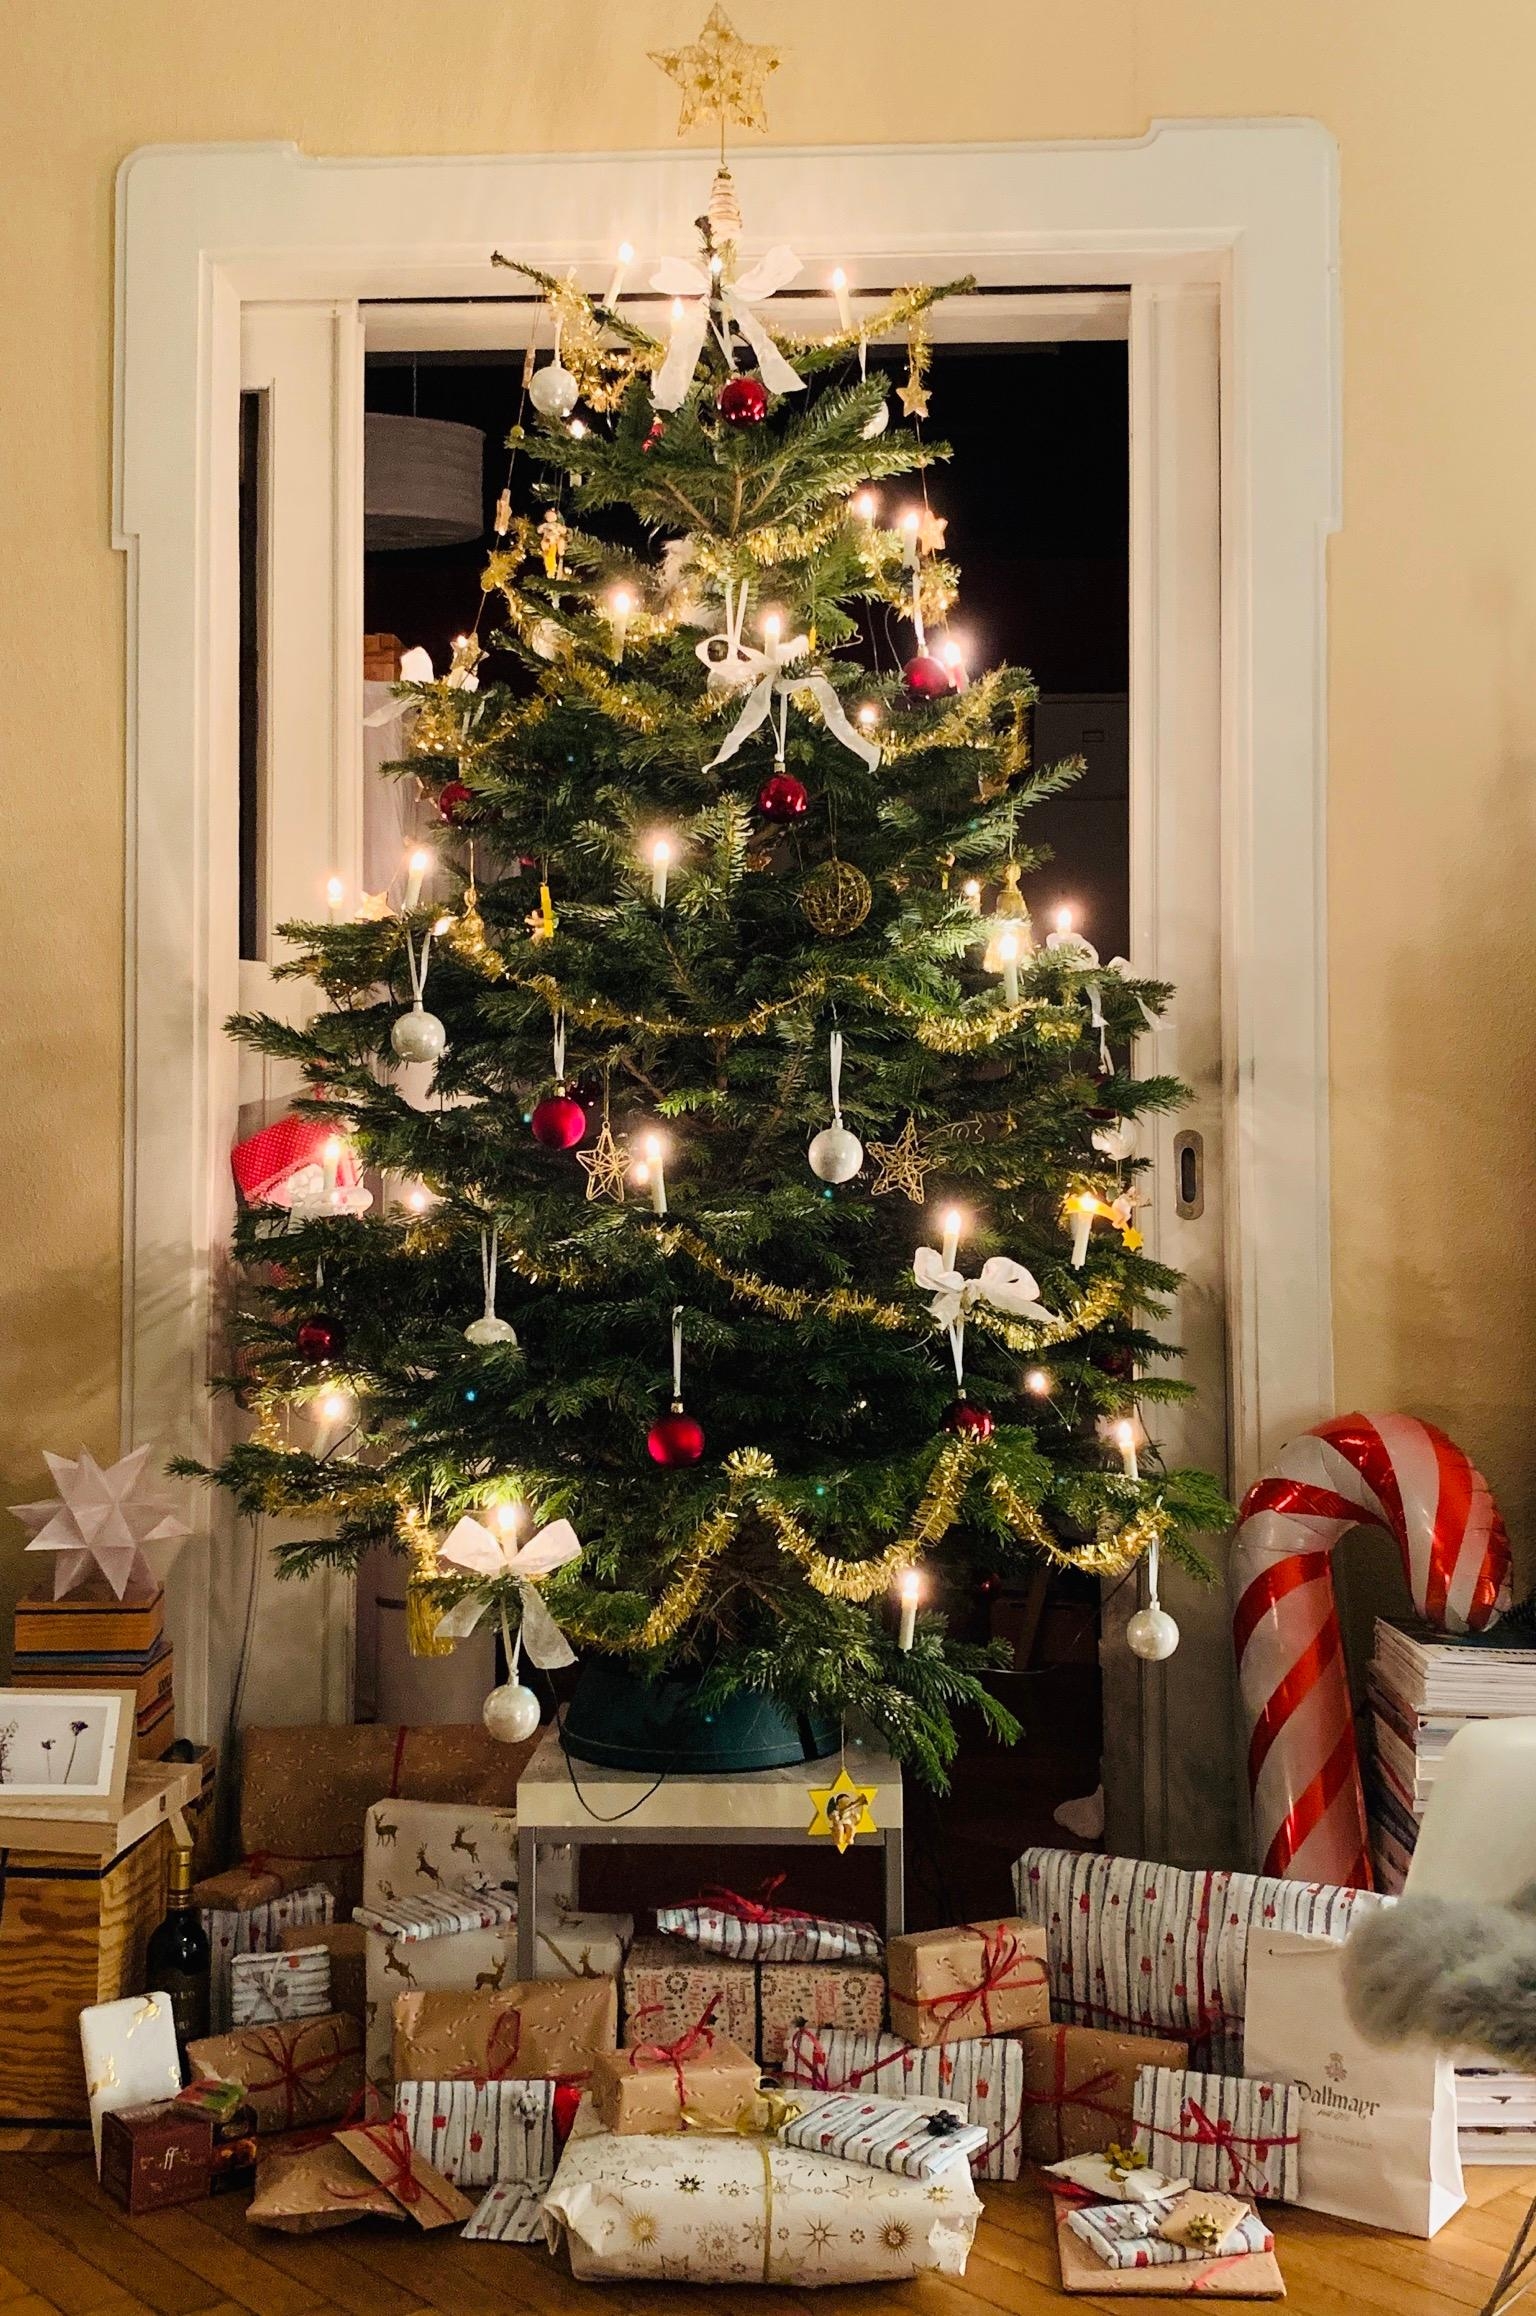 Eine schöne Weihnachtszeit.....

#Weihnachten #Weihnachtsbaum #Christmas #Xmas #noel 